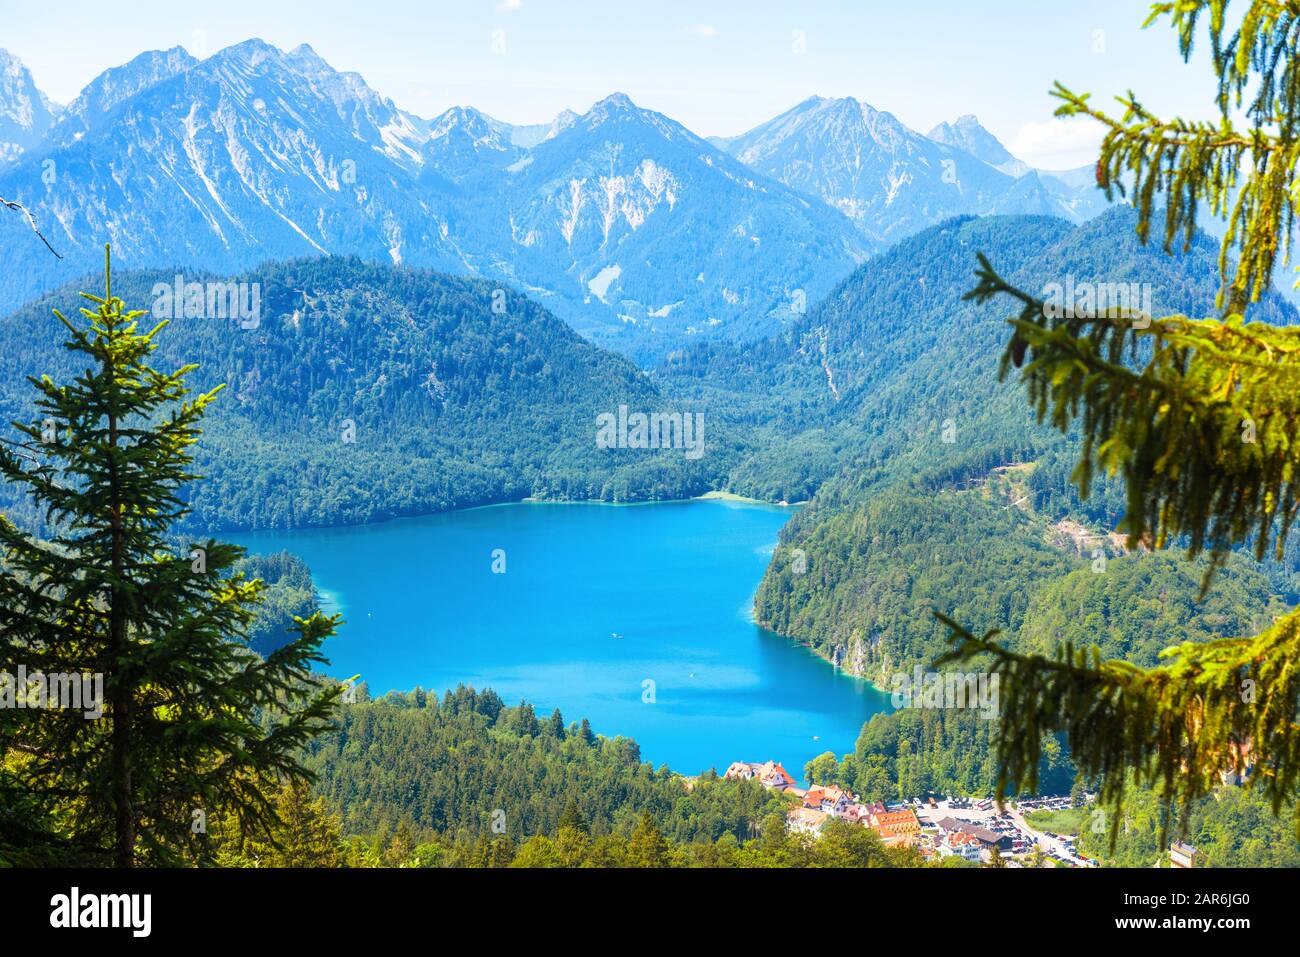 Paesaggio delle montagne alpine, Germania. Splendida vista panoramica della natura dall'alto. Bel paesaggio con il lago Alpsee e il villaggio Hohenschwangau in primo piano Foto Stock